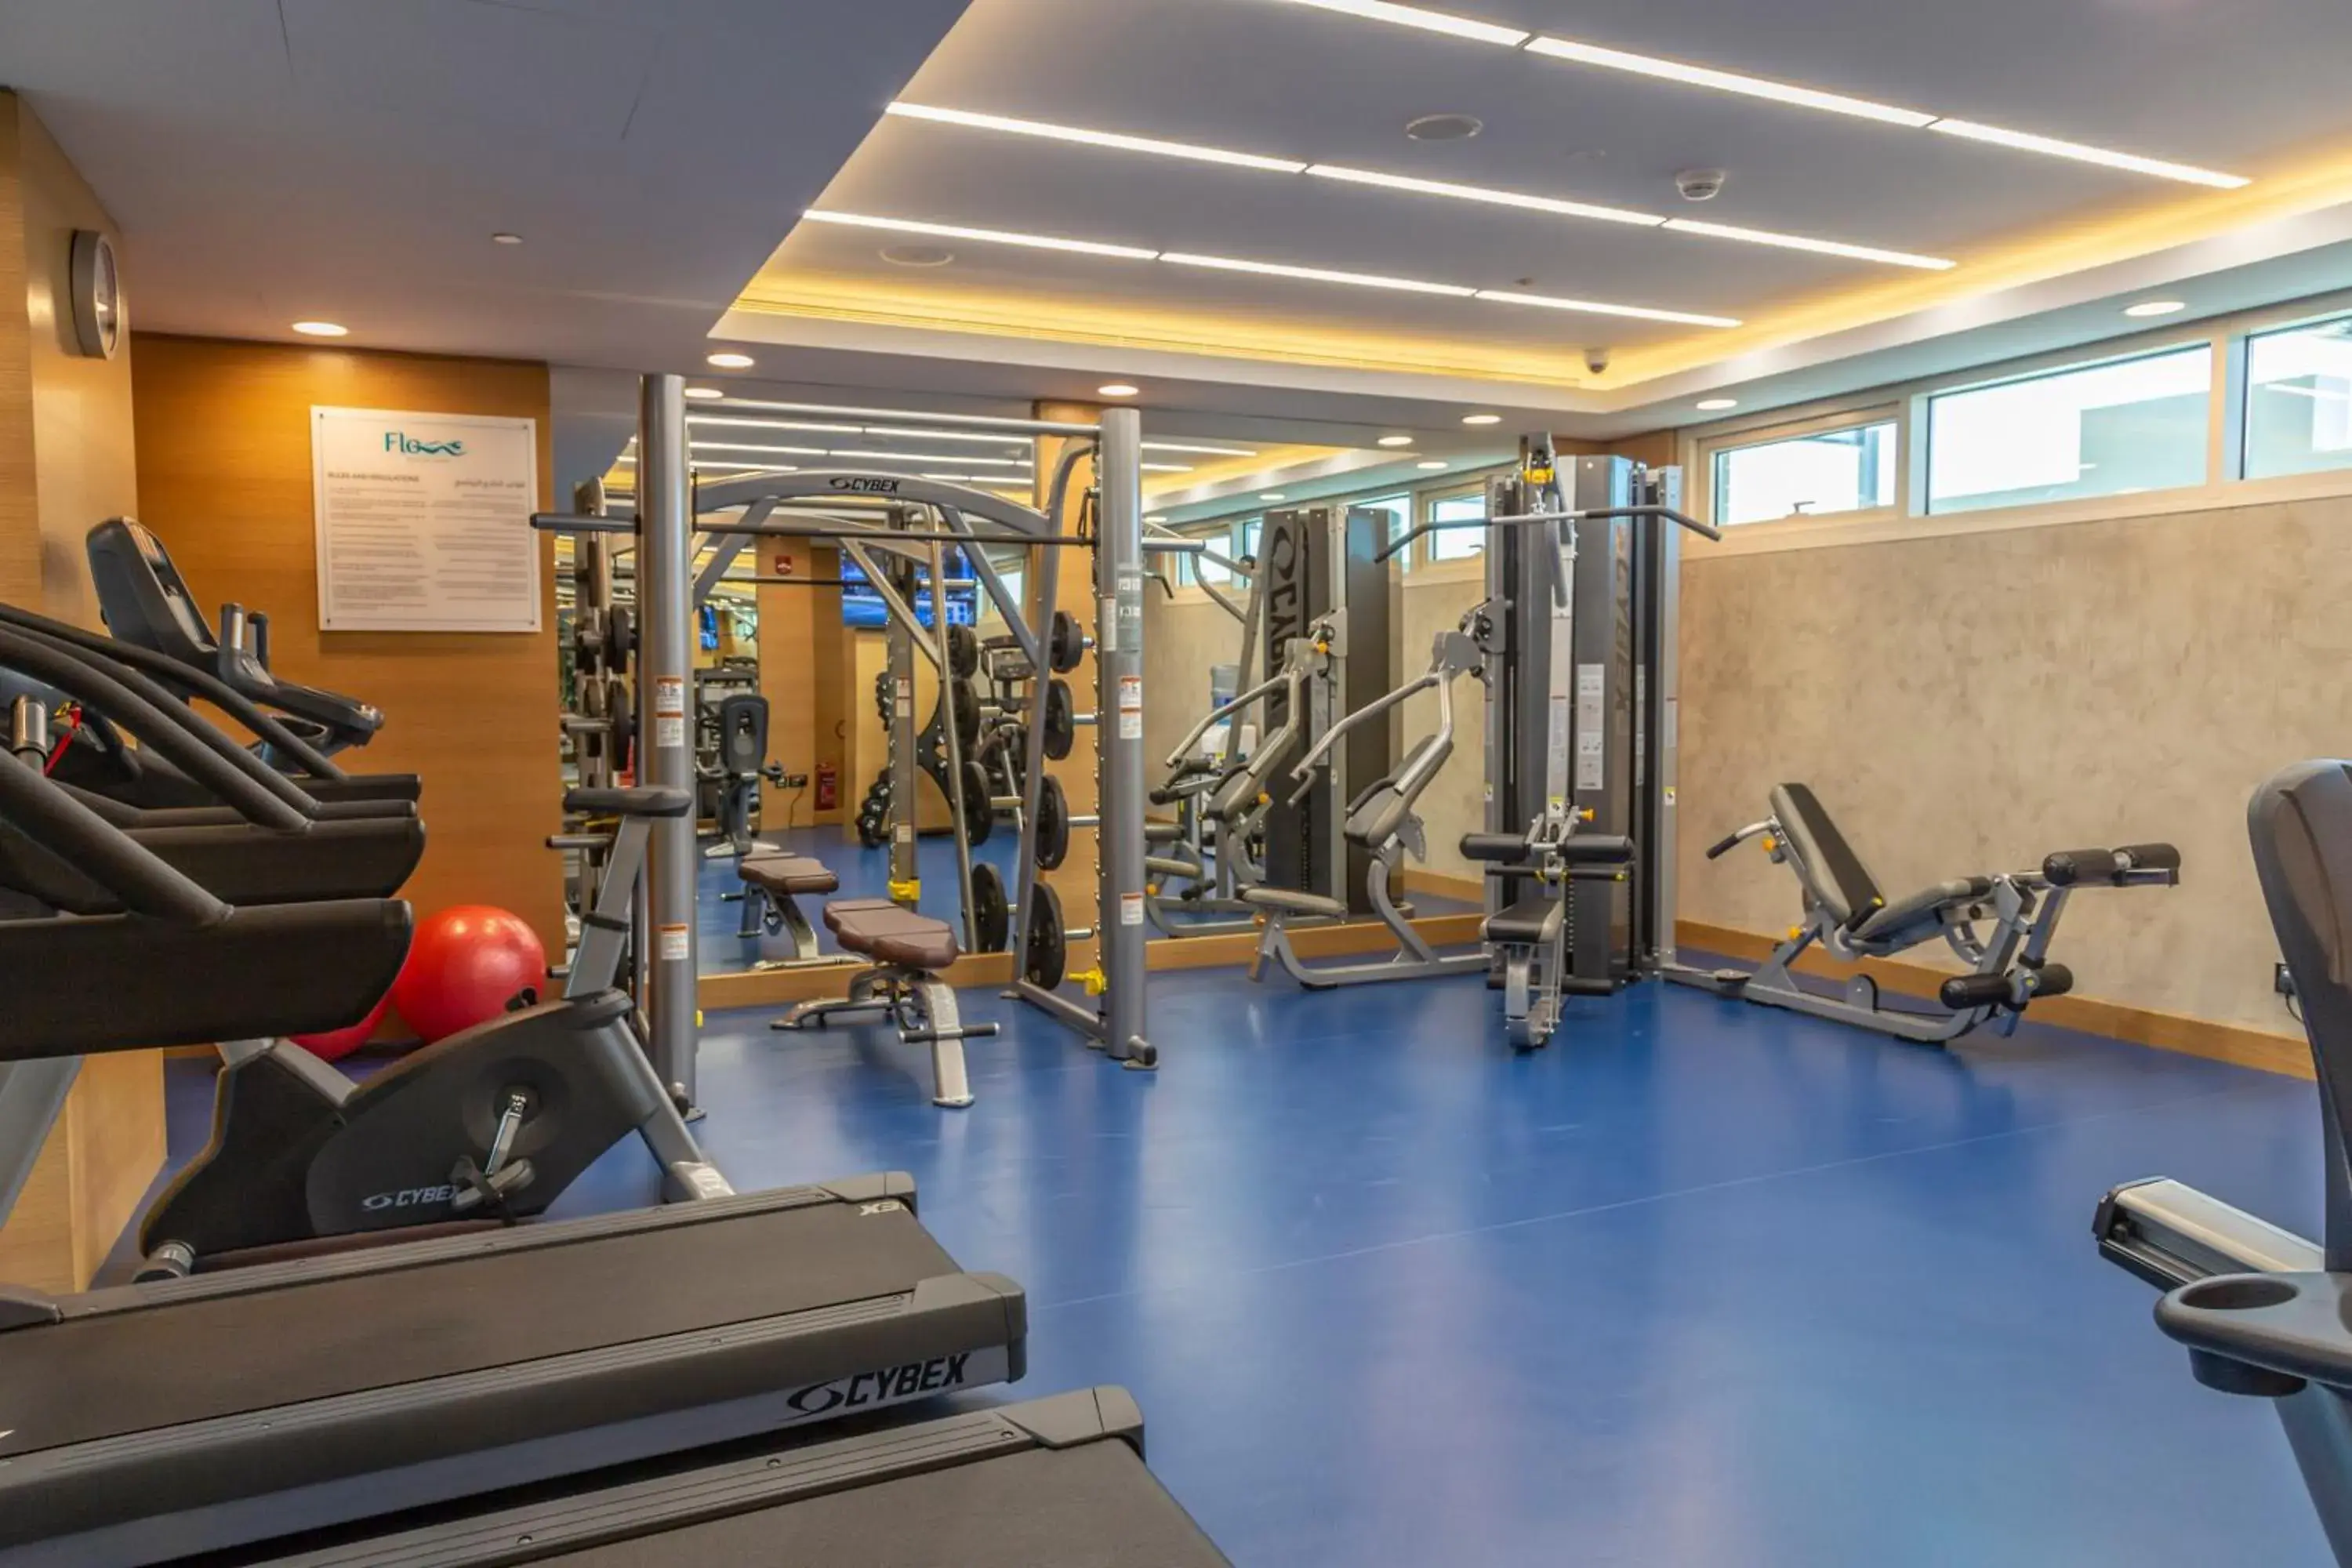 Fitness centre/facilities, Fitness Center/Facilities in Gulf Inn Hotel Al Nasr Formerly Roda Links Al Nasr